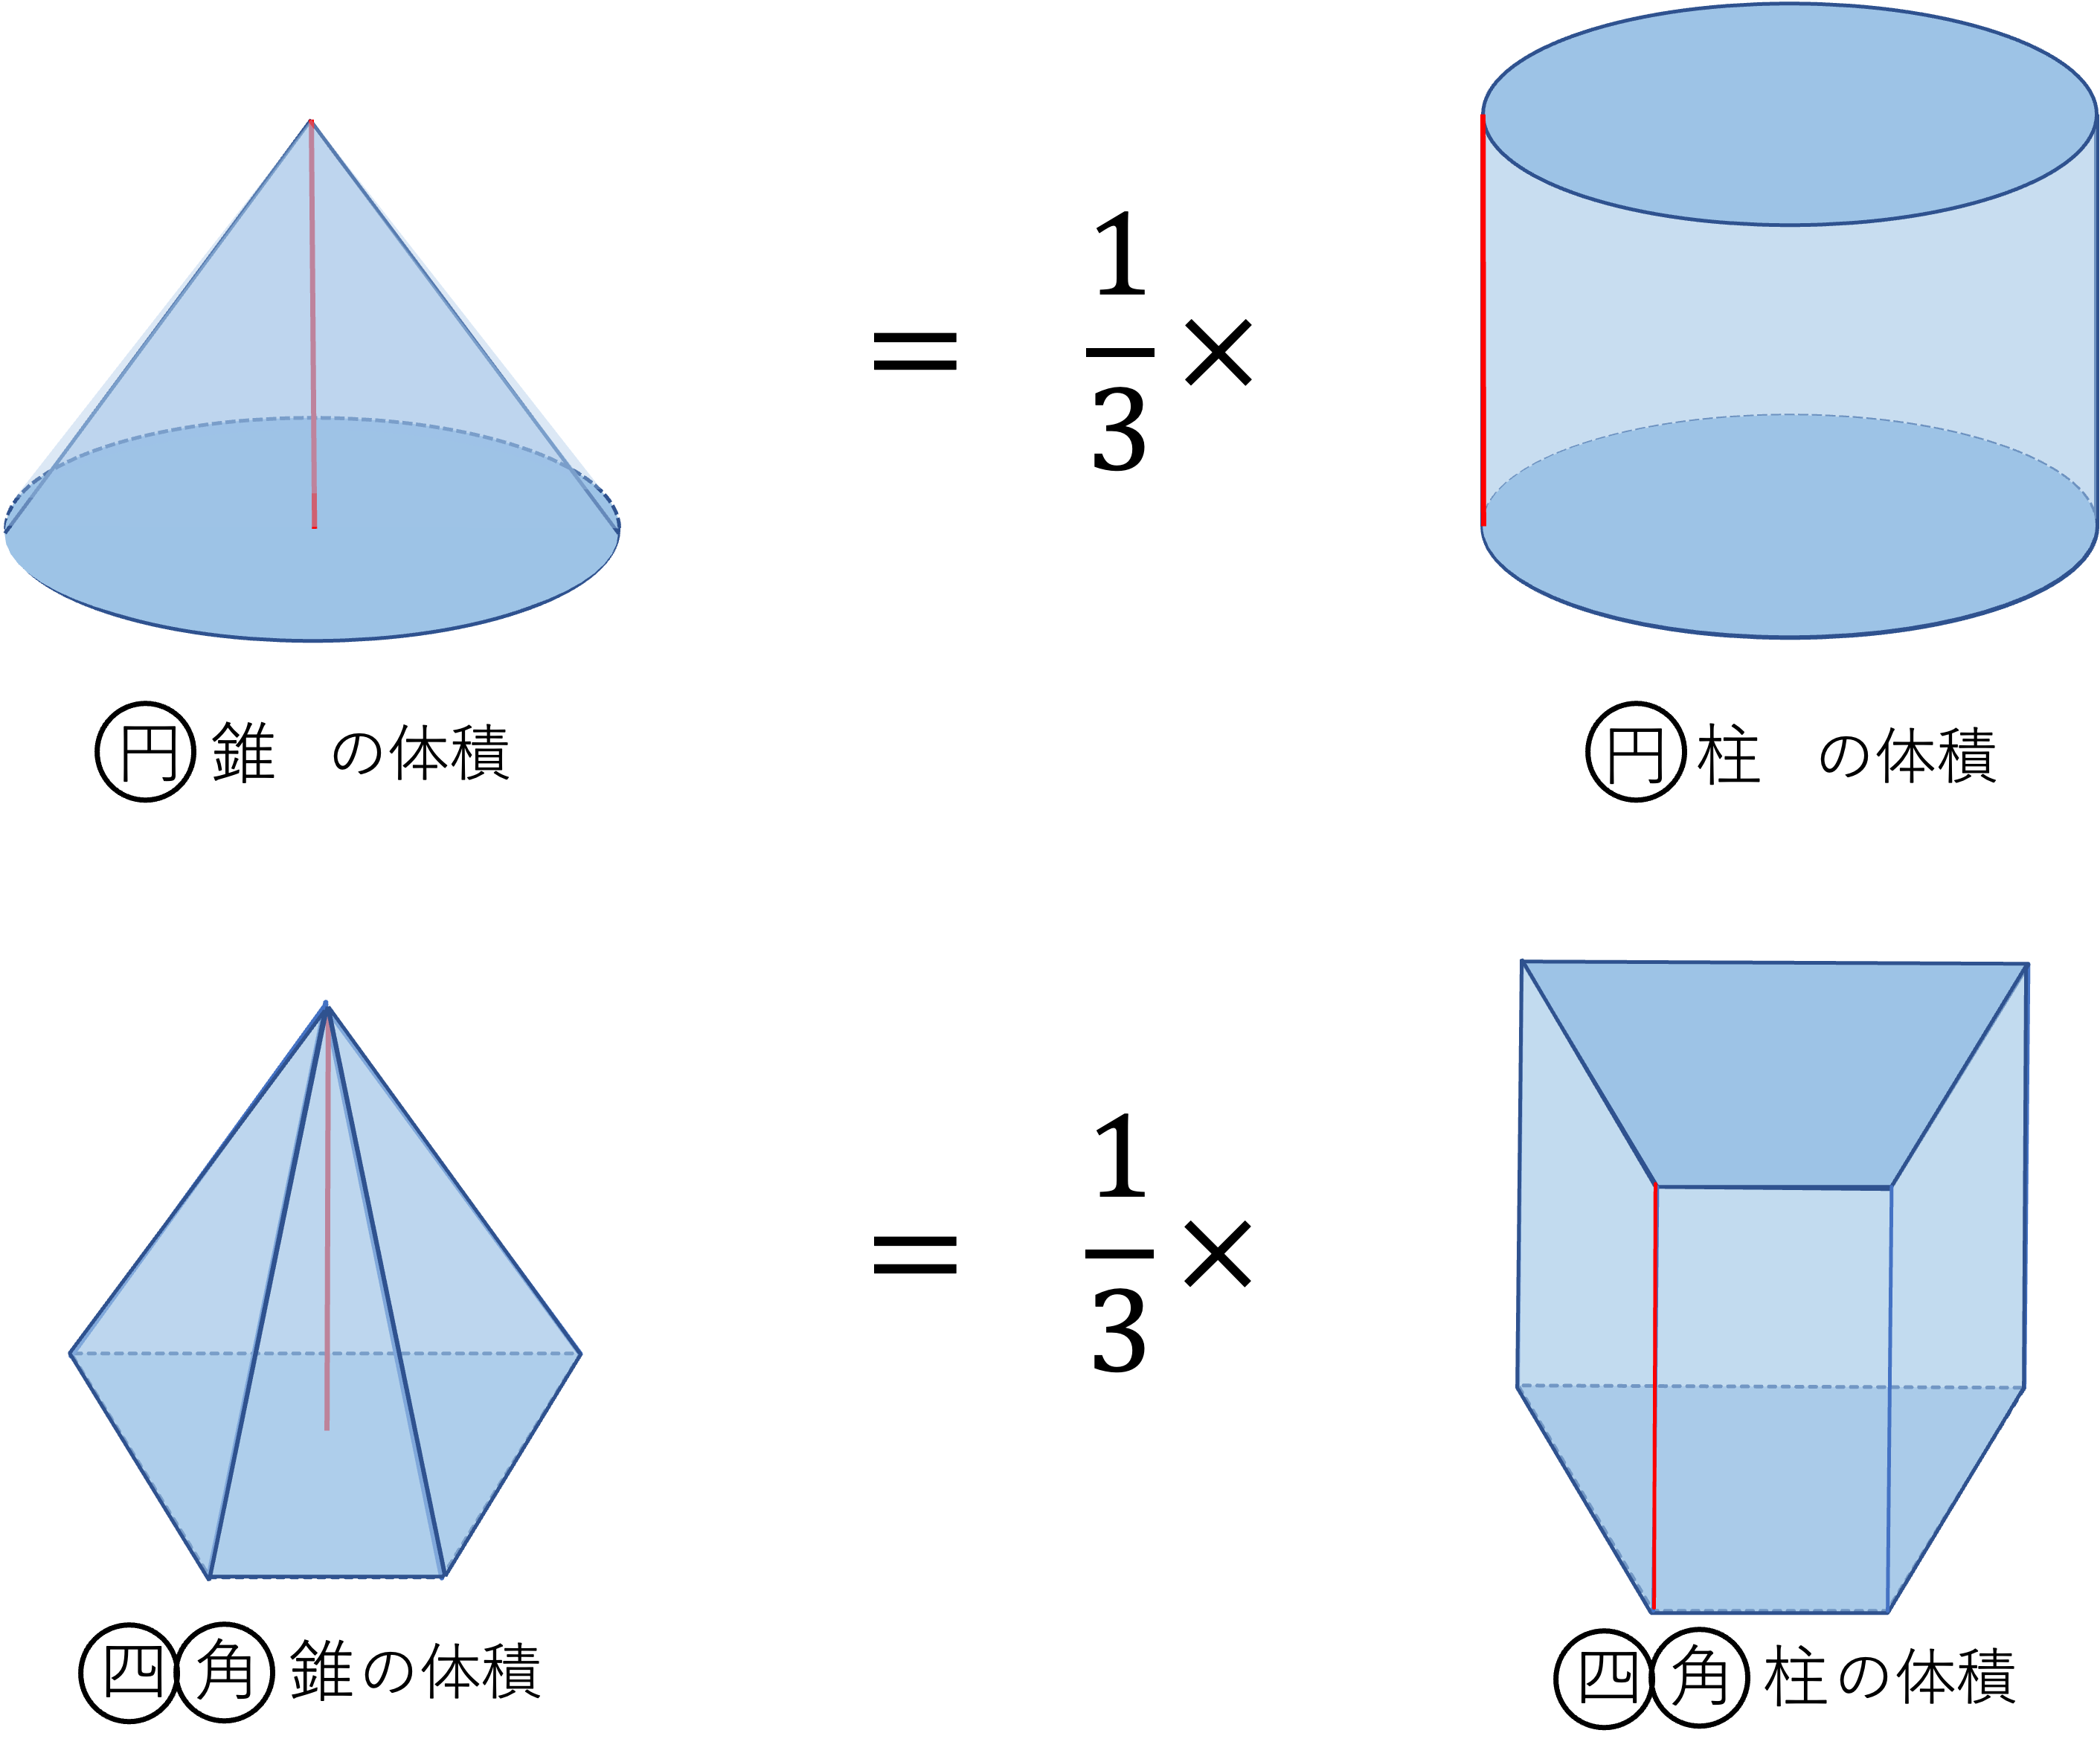 空間図形 立体 の体積の求め方 四角柱 四角錐 円柱 円錐編 算数からやさしく解説 数学 統計教室の和から株式会社